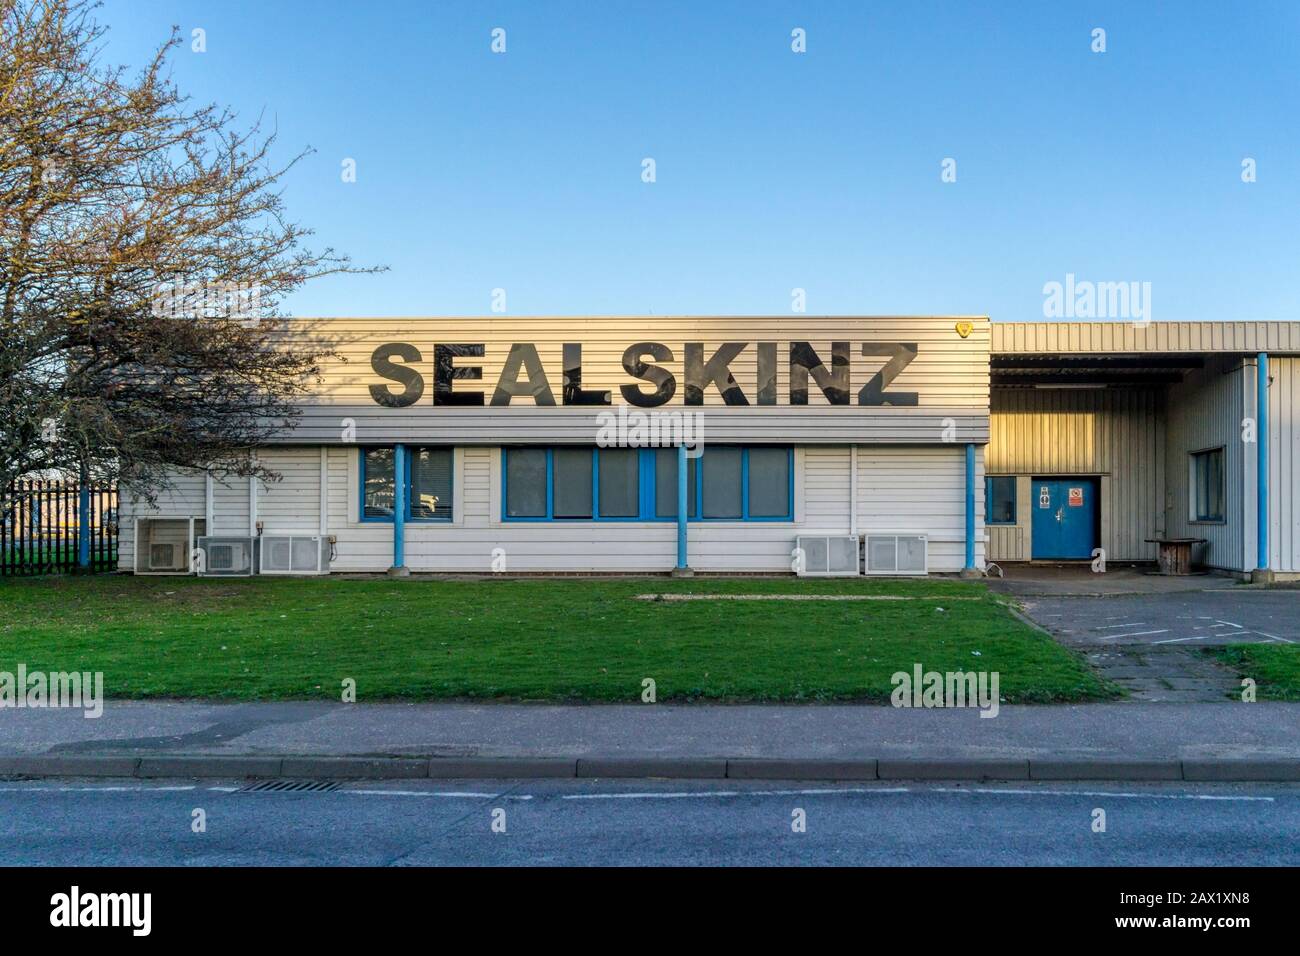 Das Gelände von Sealskinz, Hersteller von wasserdichter Kleidung und Accessoires in King's Lynn, Norfolk. Stockfoto